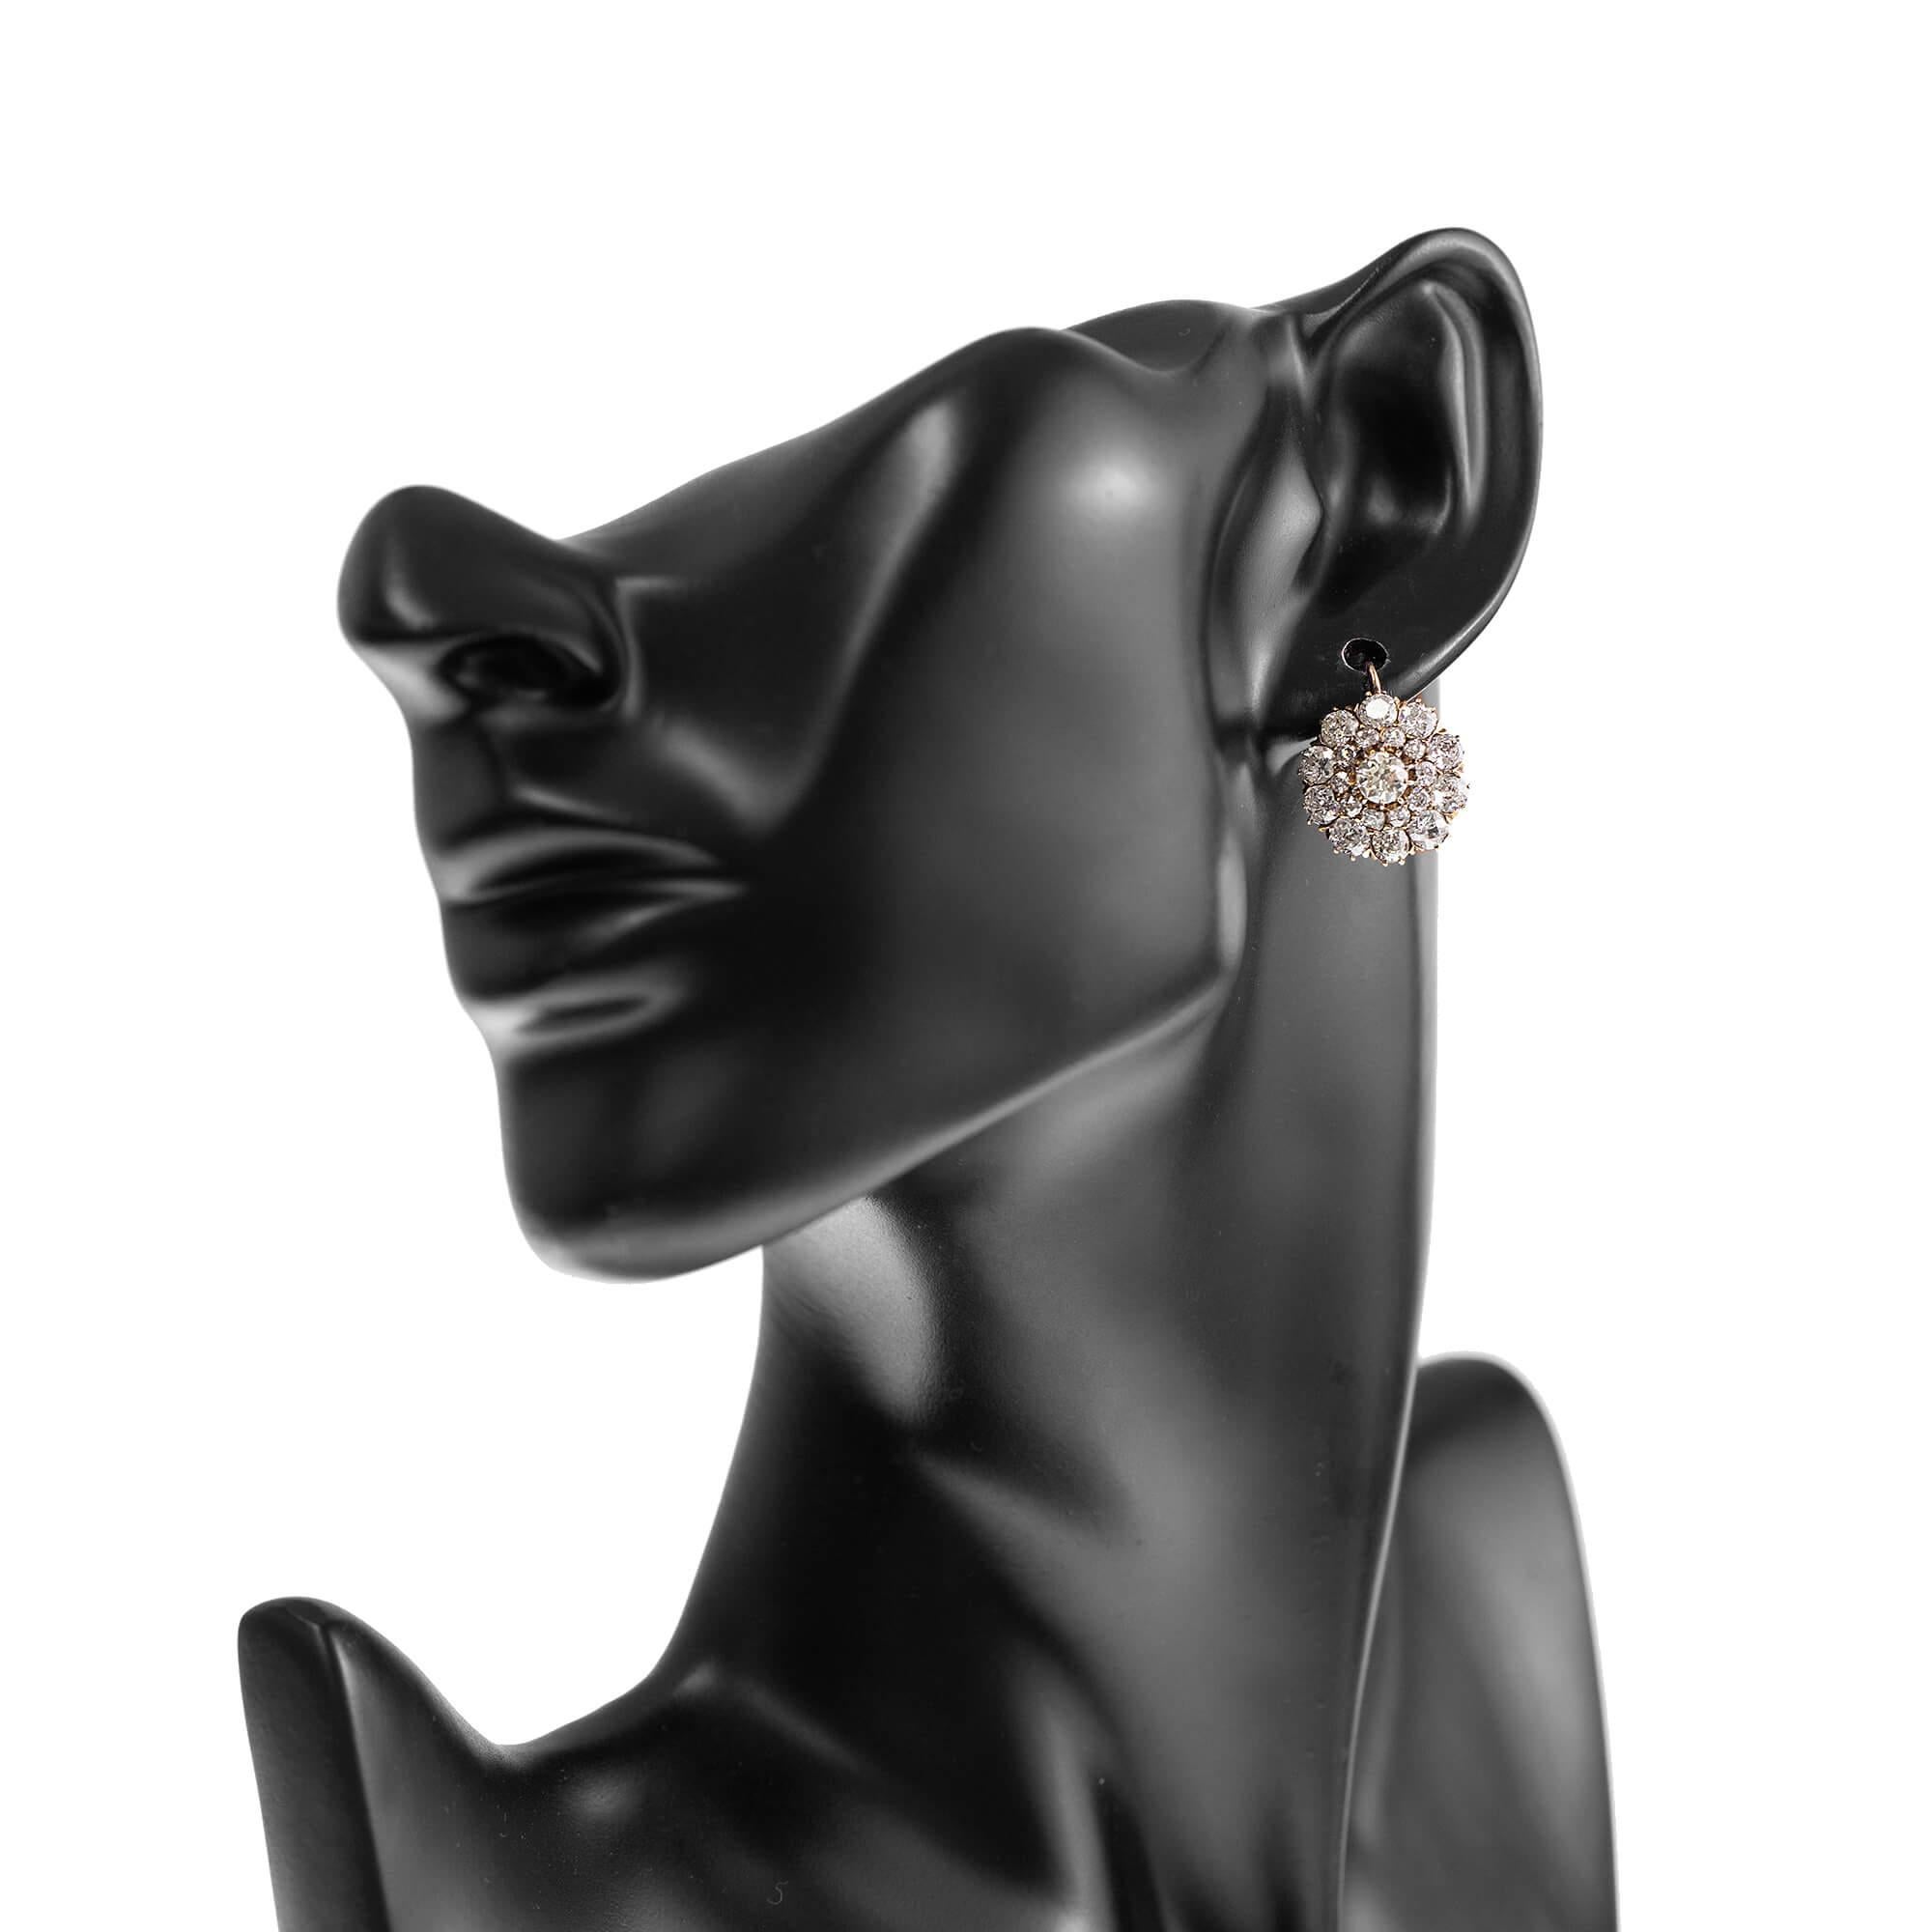 Ein Paar zweistufige Diamant-Cluster-Ohrringe aus Roségold mit kontinentalen Clipbeschlägen. Die Diamanten in Krallenfassung haben ein spektakuläres Funkeln. Dieses Paar Ohrringe wird in der Originalverpackung präsentiert.

Diamanten: Mittig